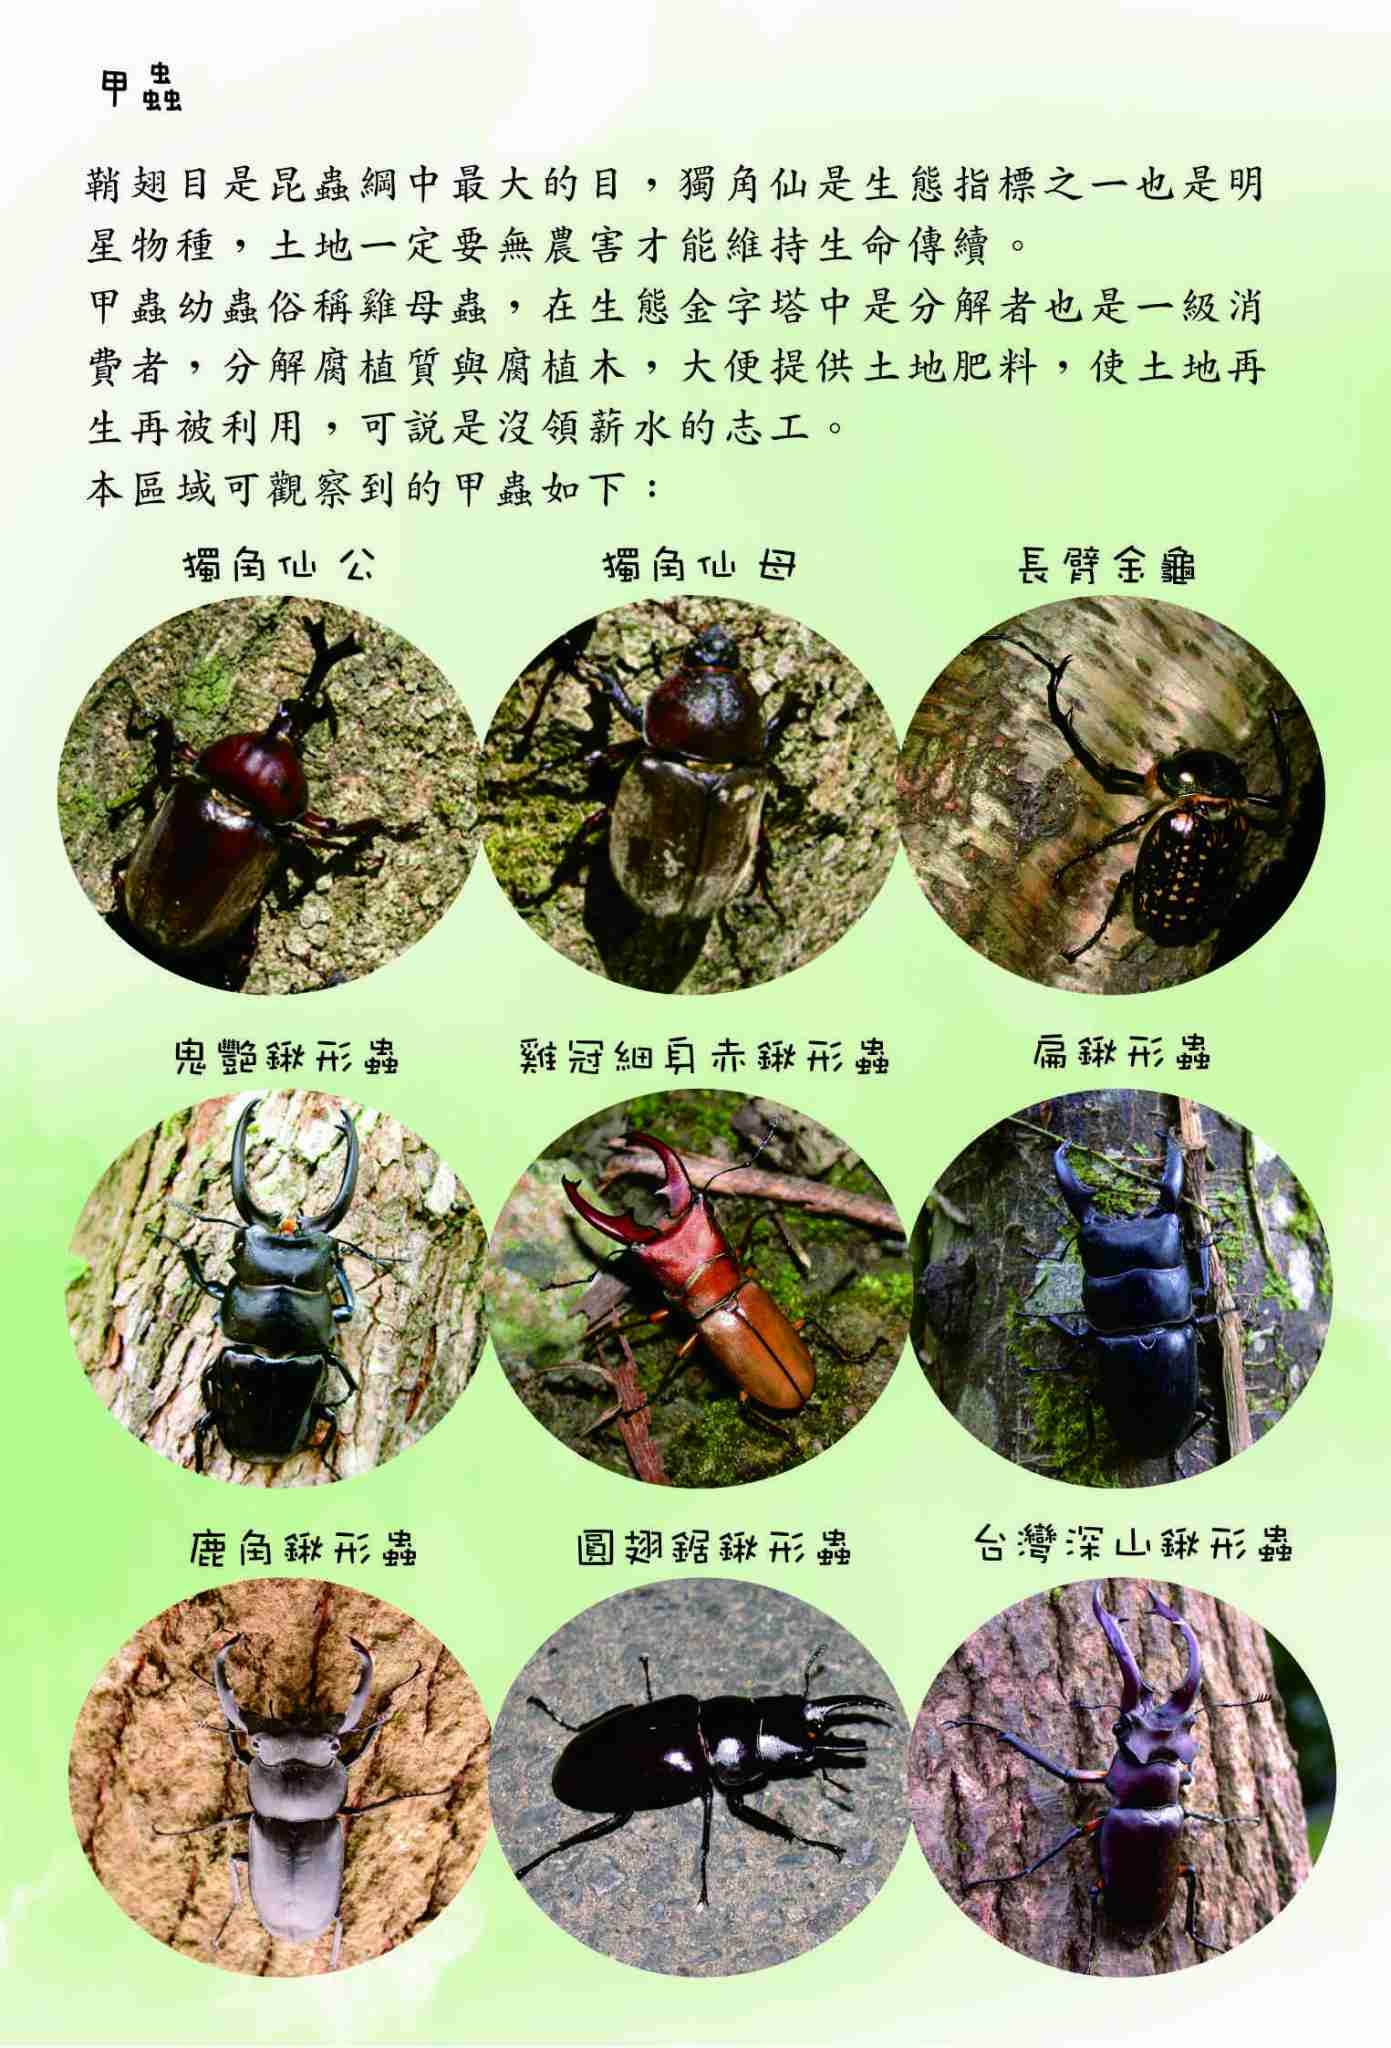 生態園區甲蟲介紹